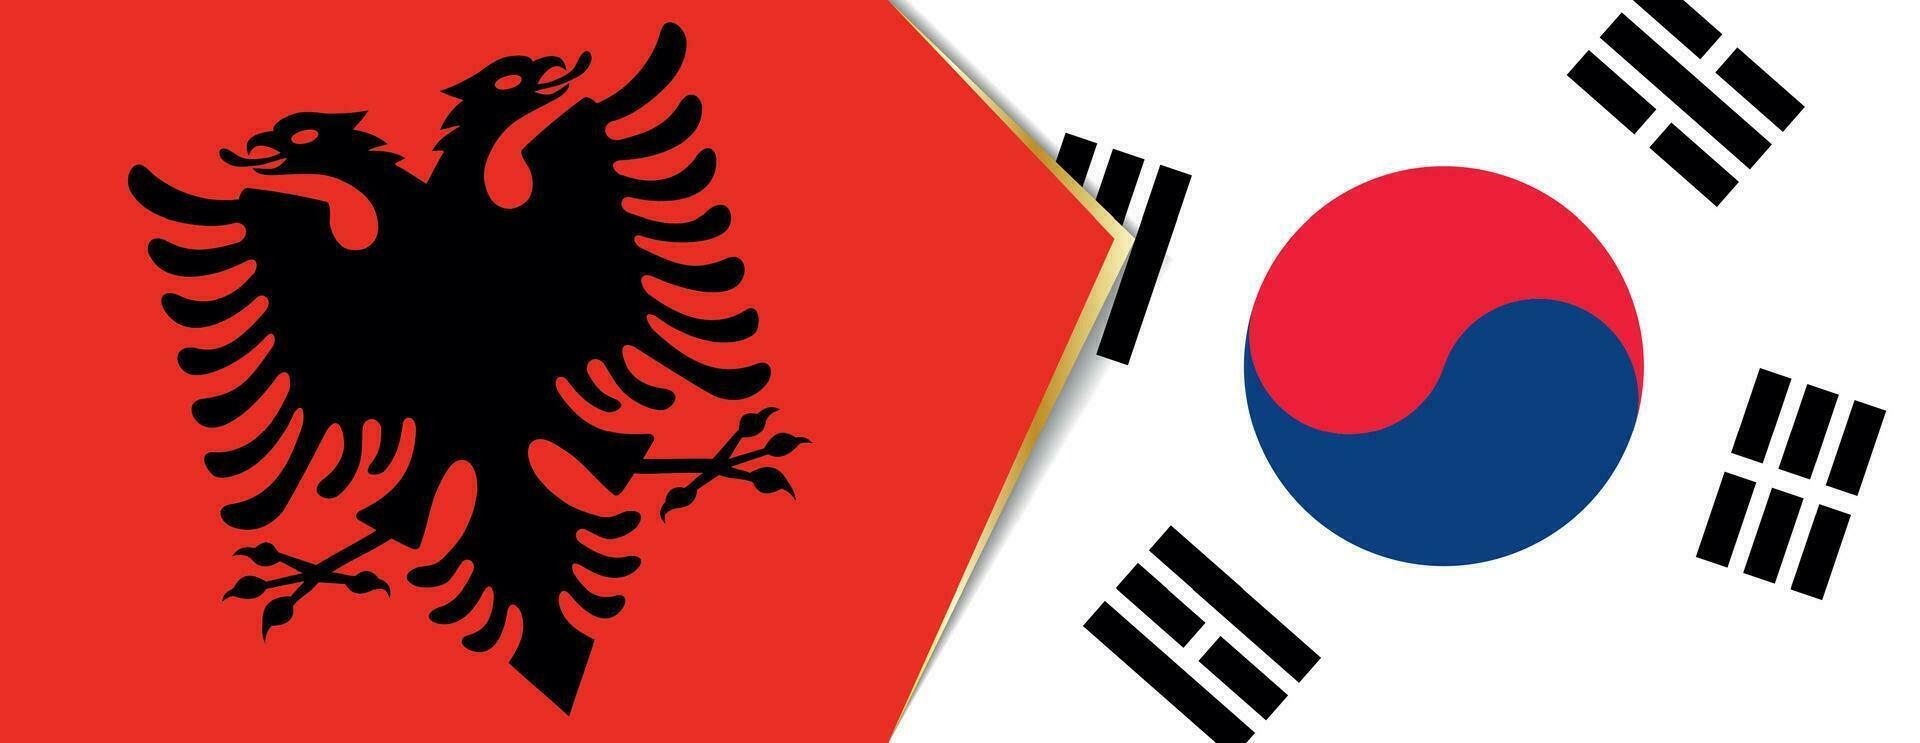 Albania y sur Corea banderas, dos vector banderas